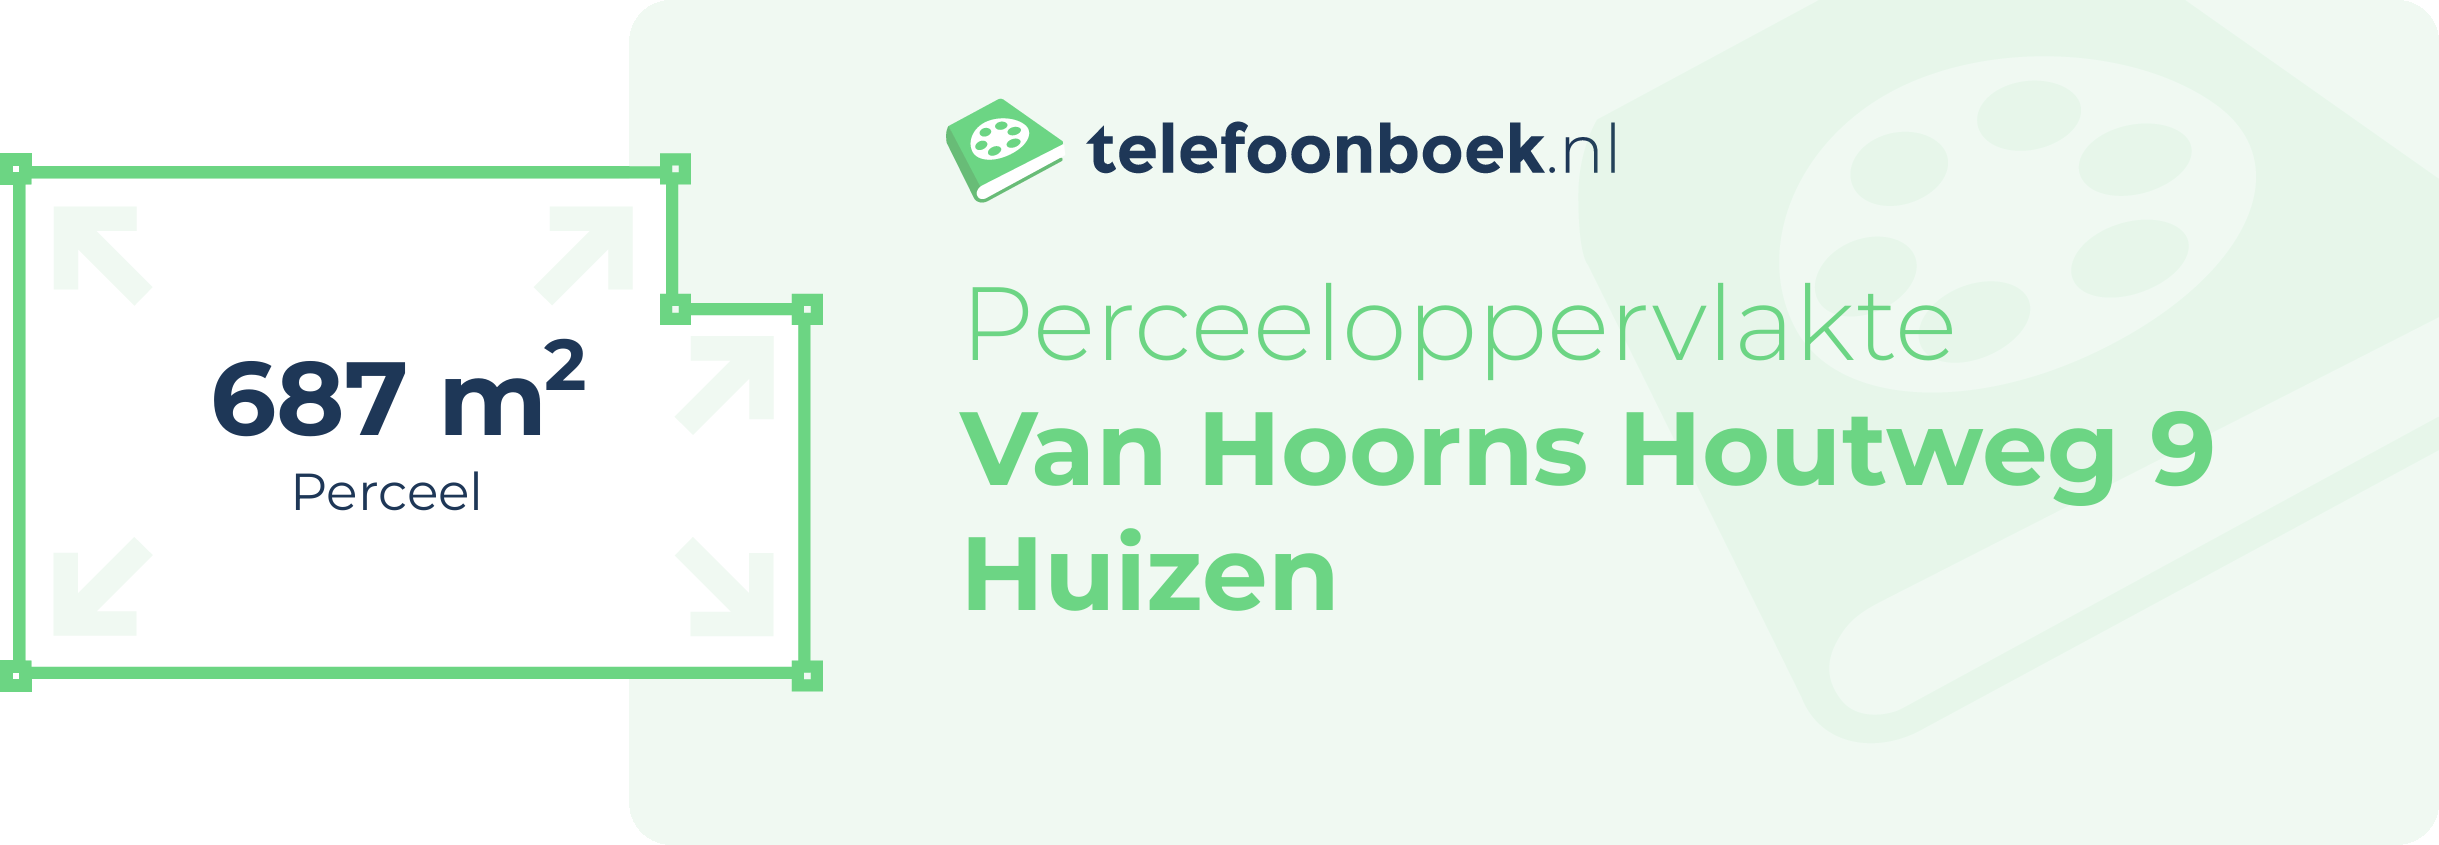 Perceeloppervlakte Van Hoorns Houtweg 9 Huizen